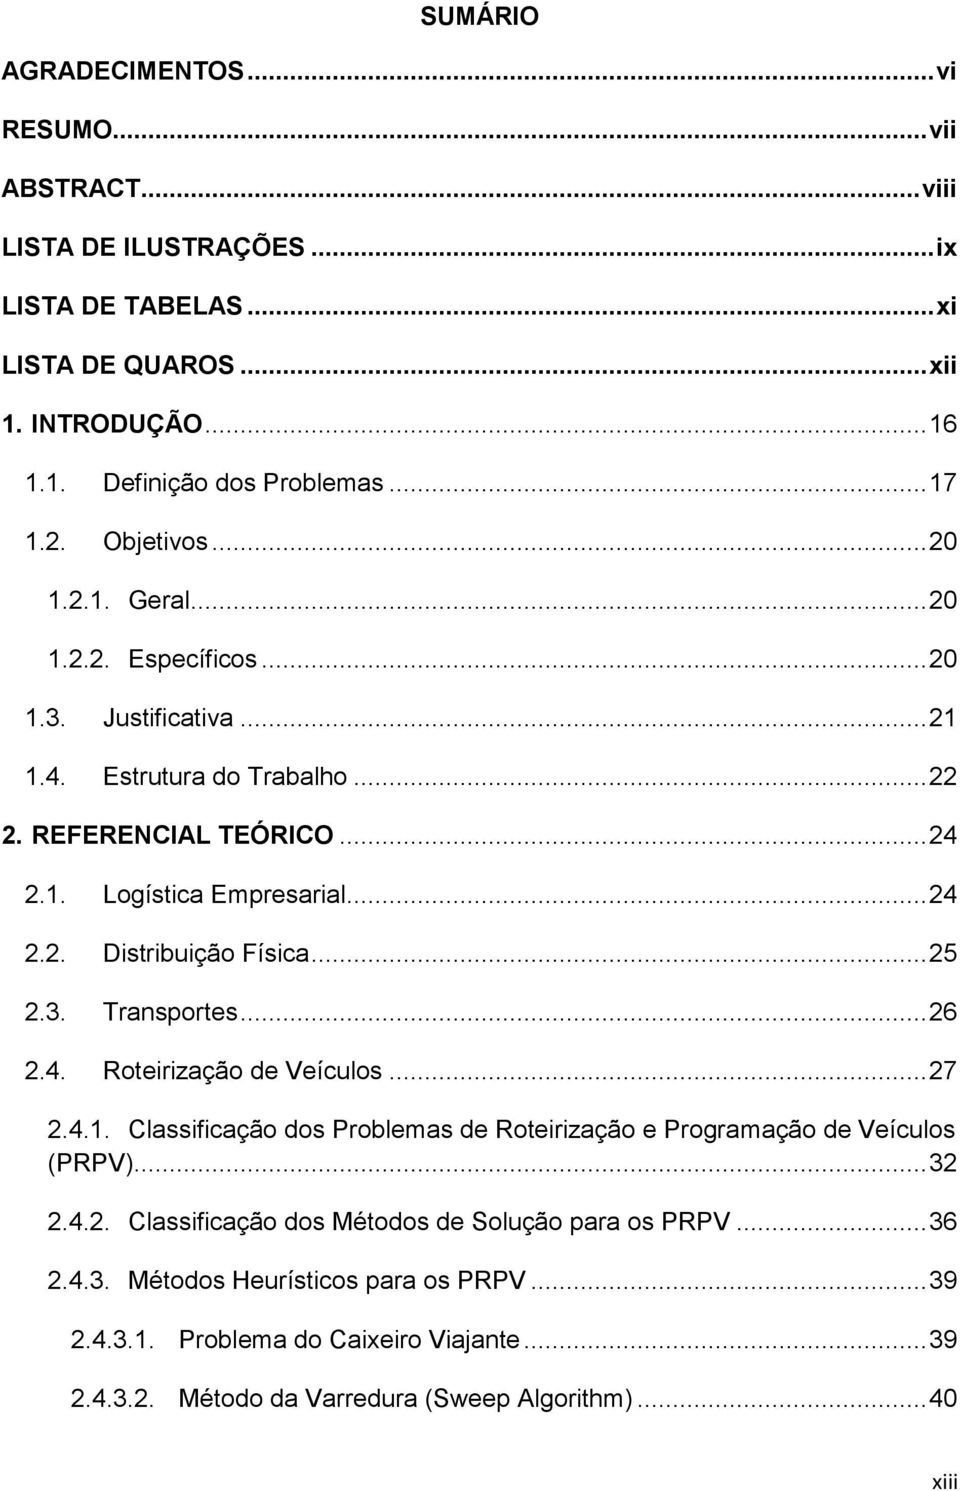 .. 25 2.3. Transportes... 26 2.4. Roteirização de Veículos... 27 2.4.1. Classificação dos Problemas de Roteirização e Programação de Veículos (PRPV)... 32 2.4.2. Classificação dos Métodos de Solução para os PRPV.